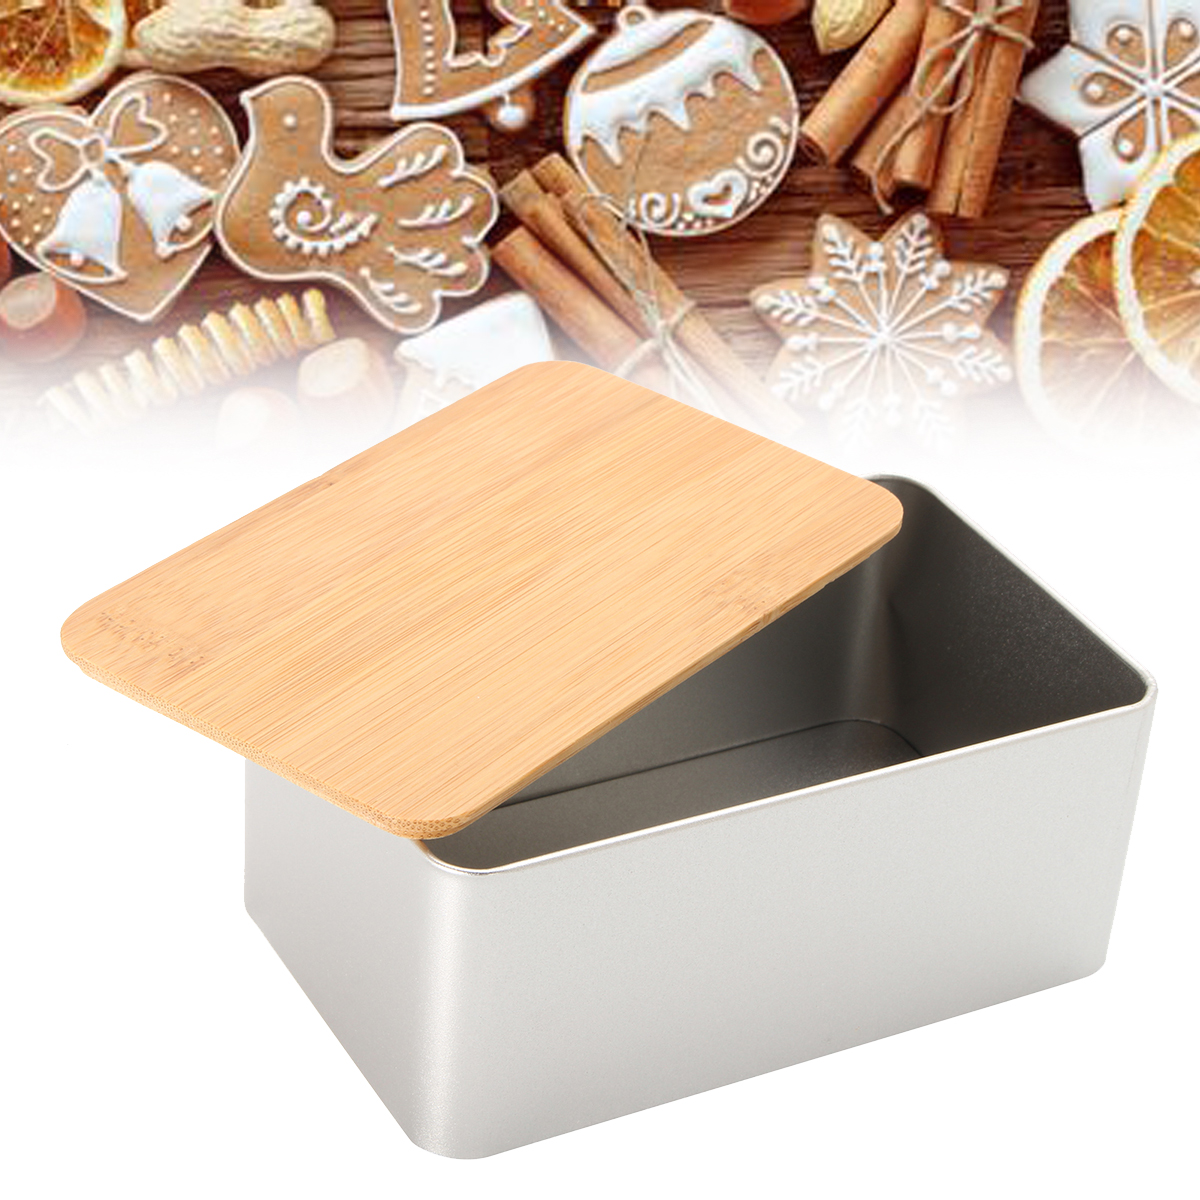 Хранение cookies. Контейнер для печенья. Железная коробка с печеньем. Контейнер для хранения печенья. Коробка для хранения печенья.